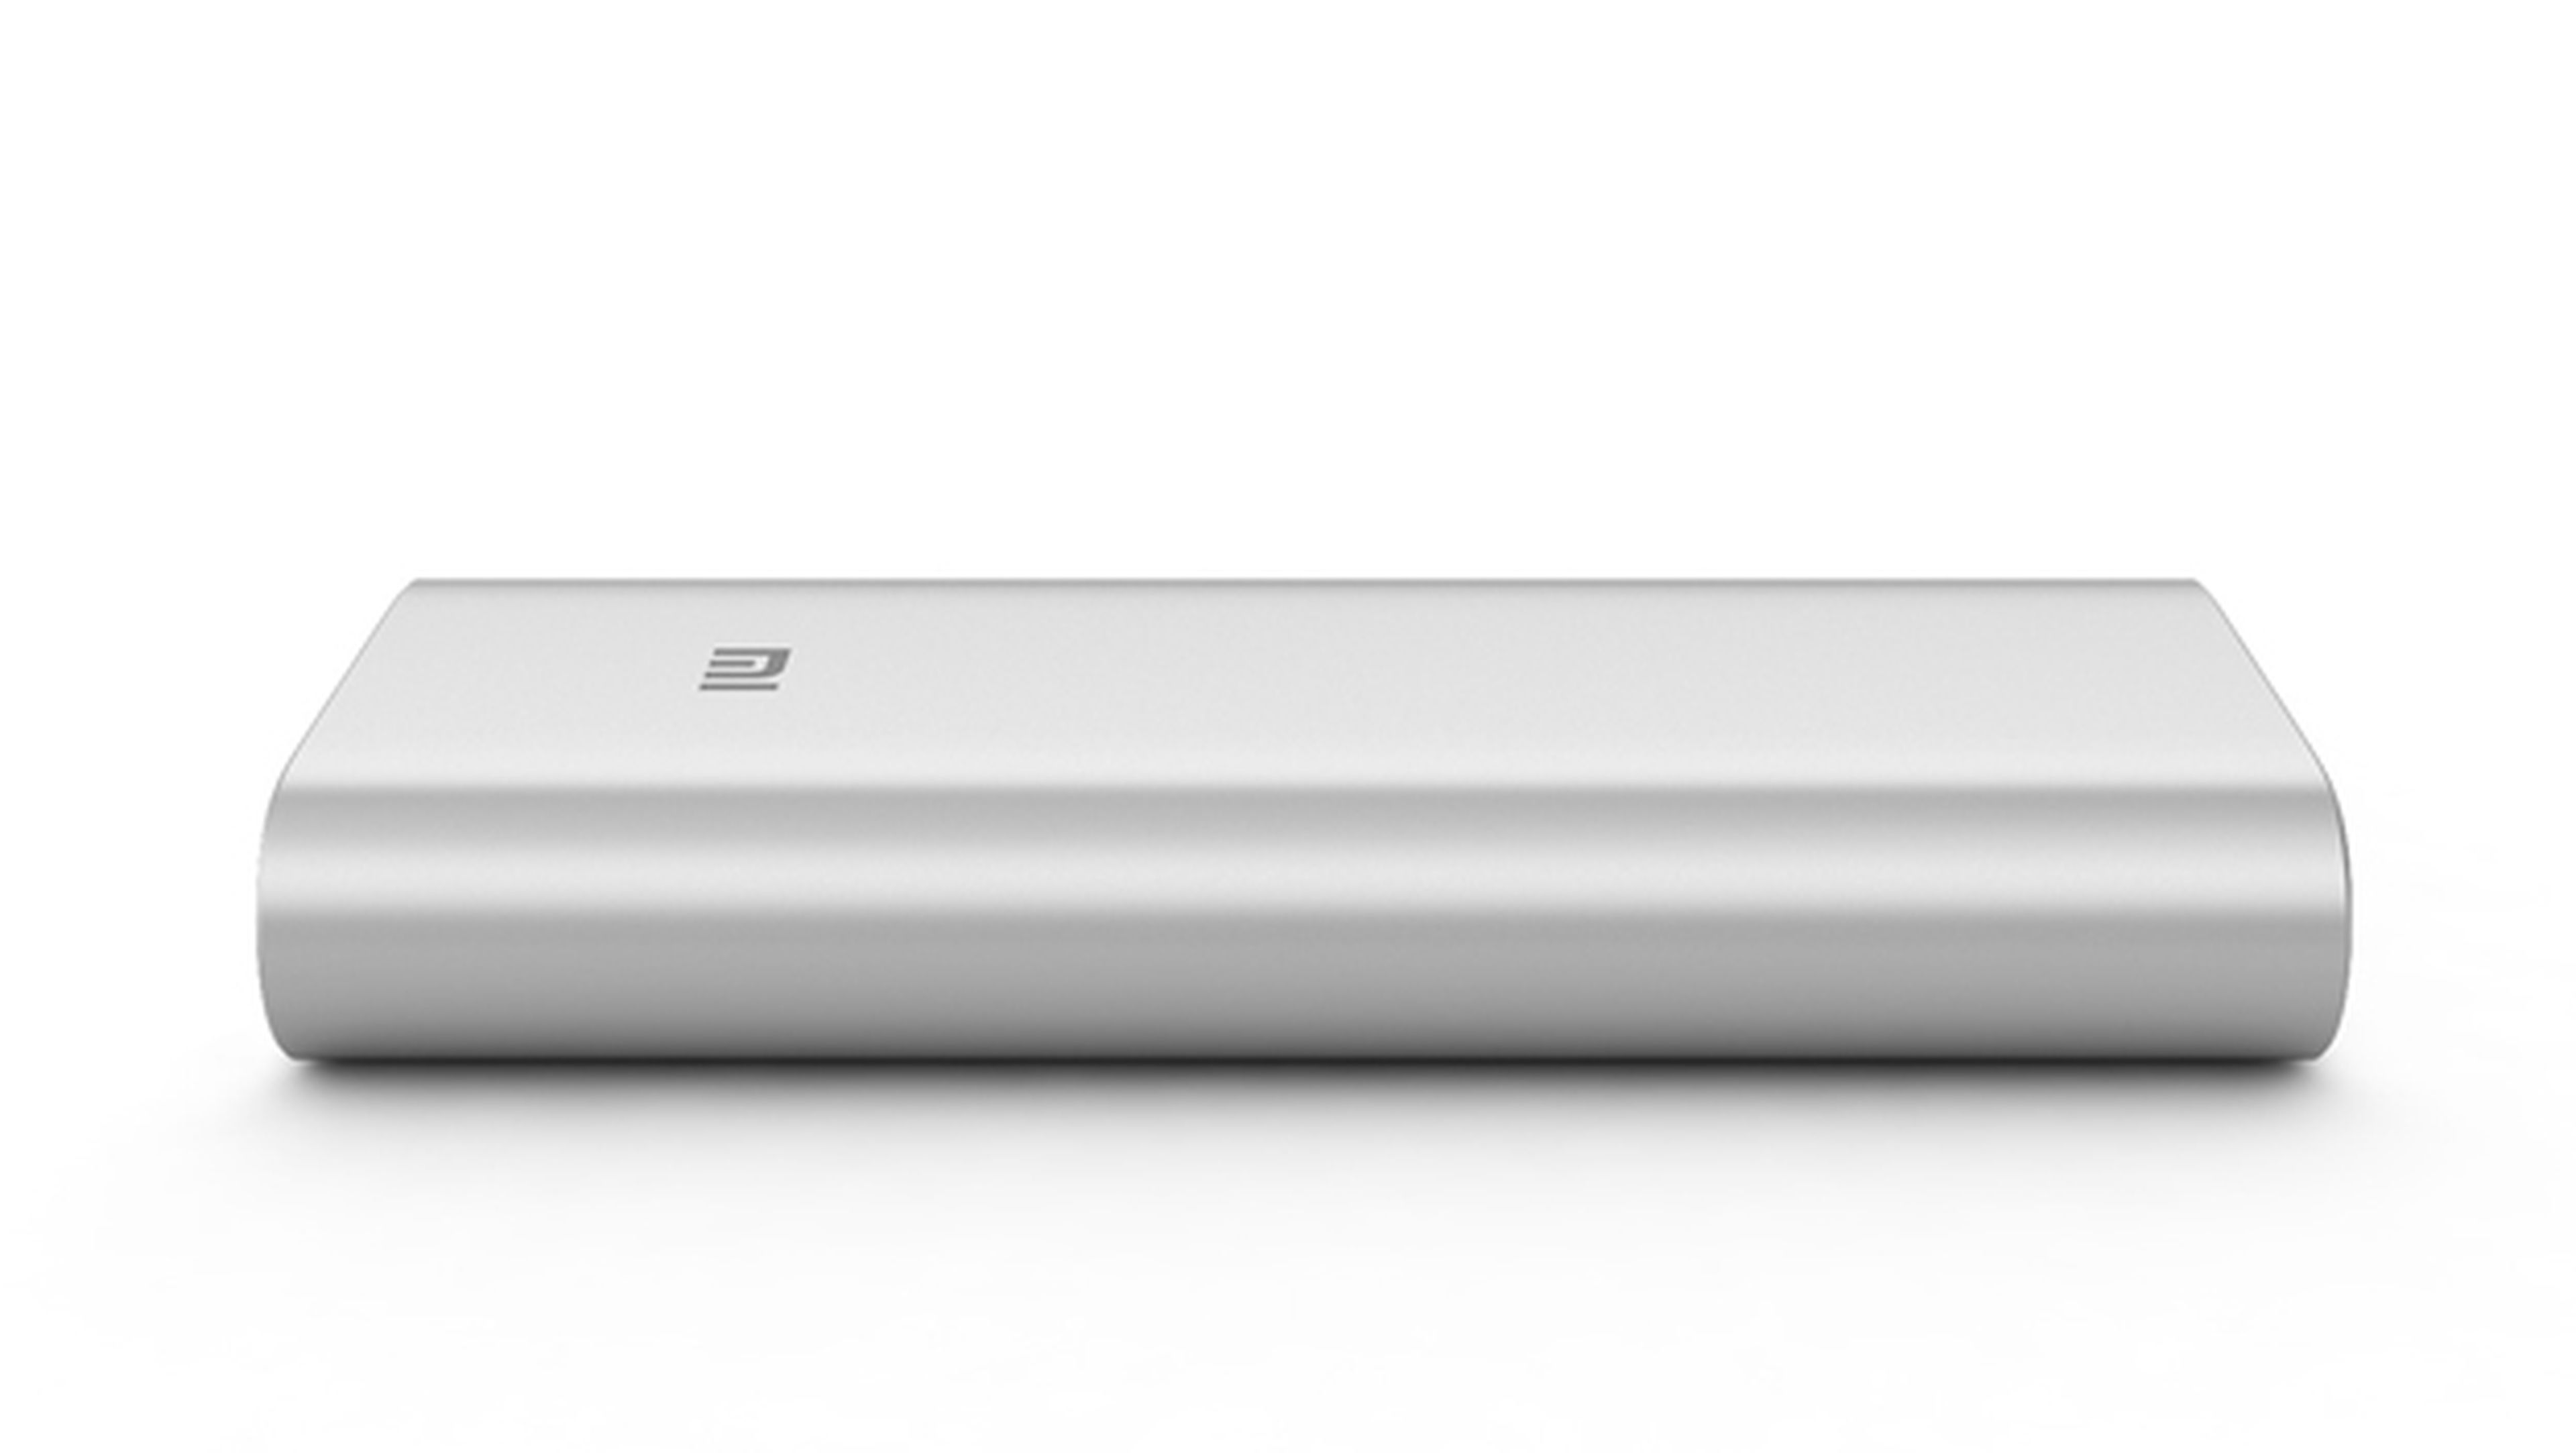 La Power Bank Pro, con 10.000mAh de capacidad, es la nueva creación de Xiaomi para el mercado de las baterías externas